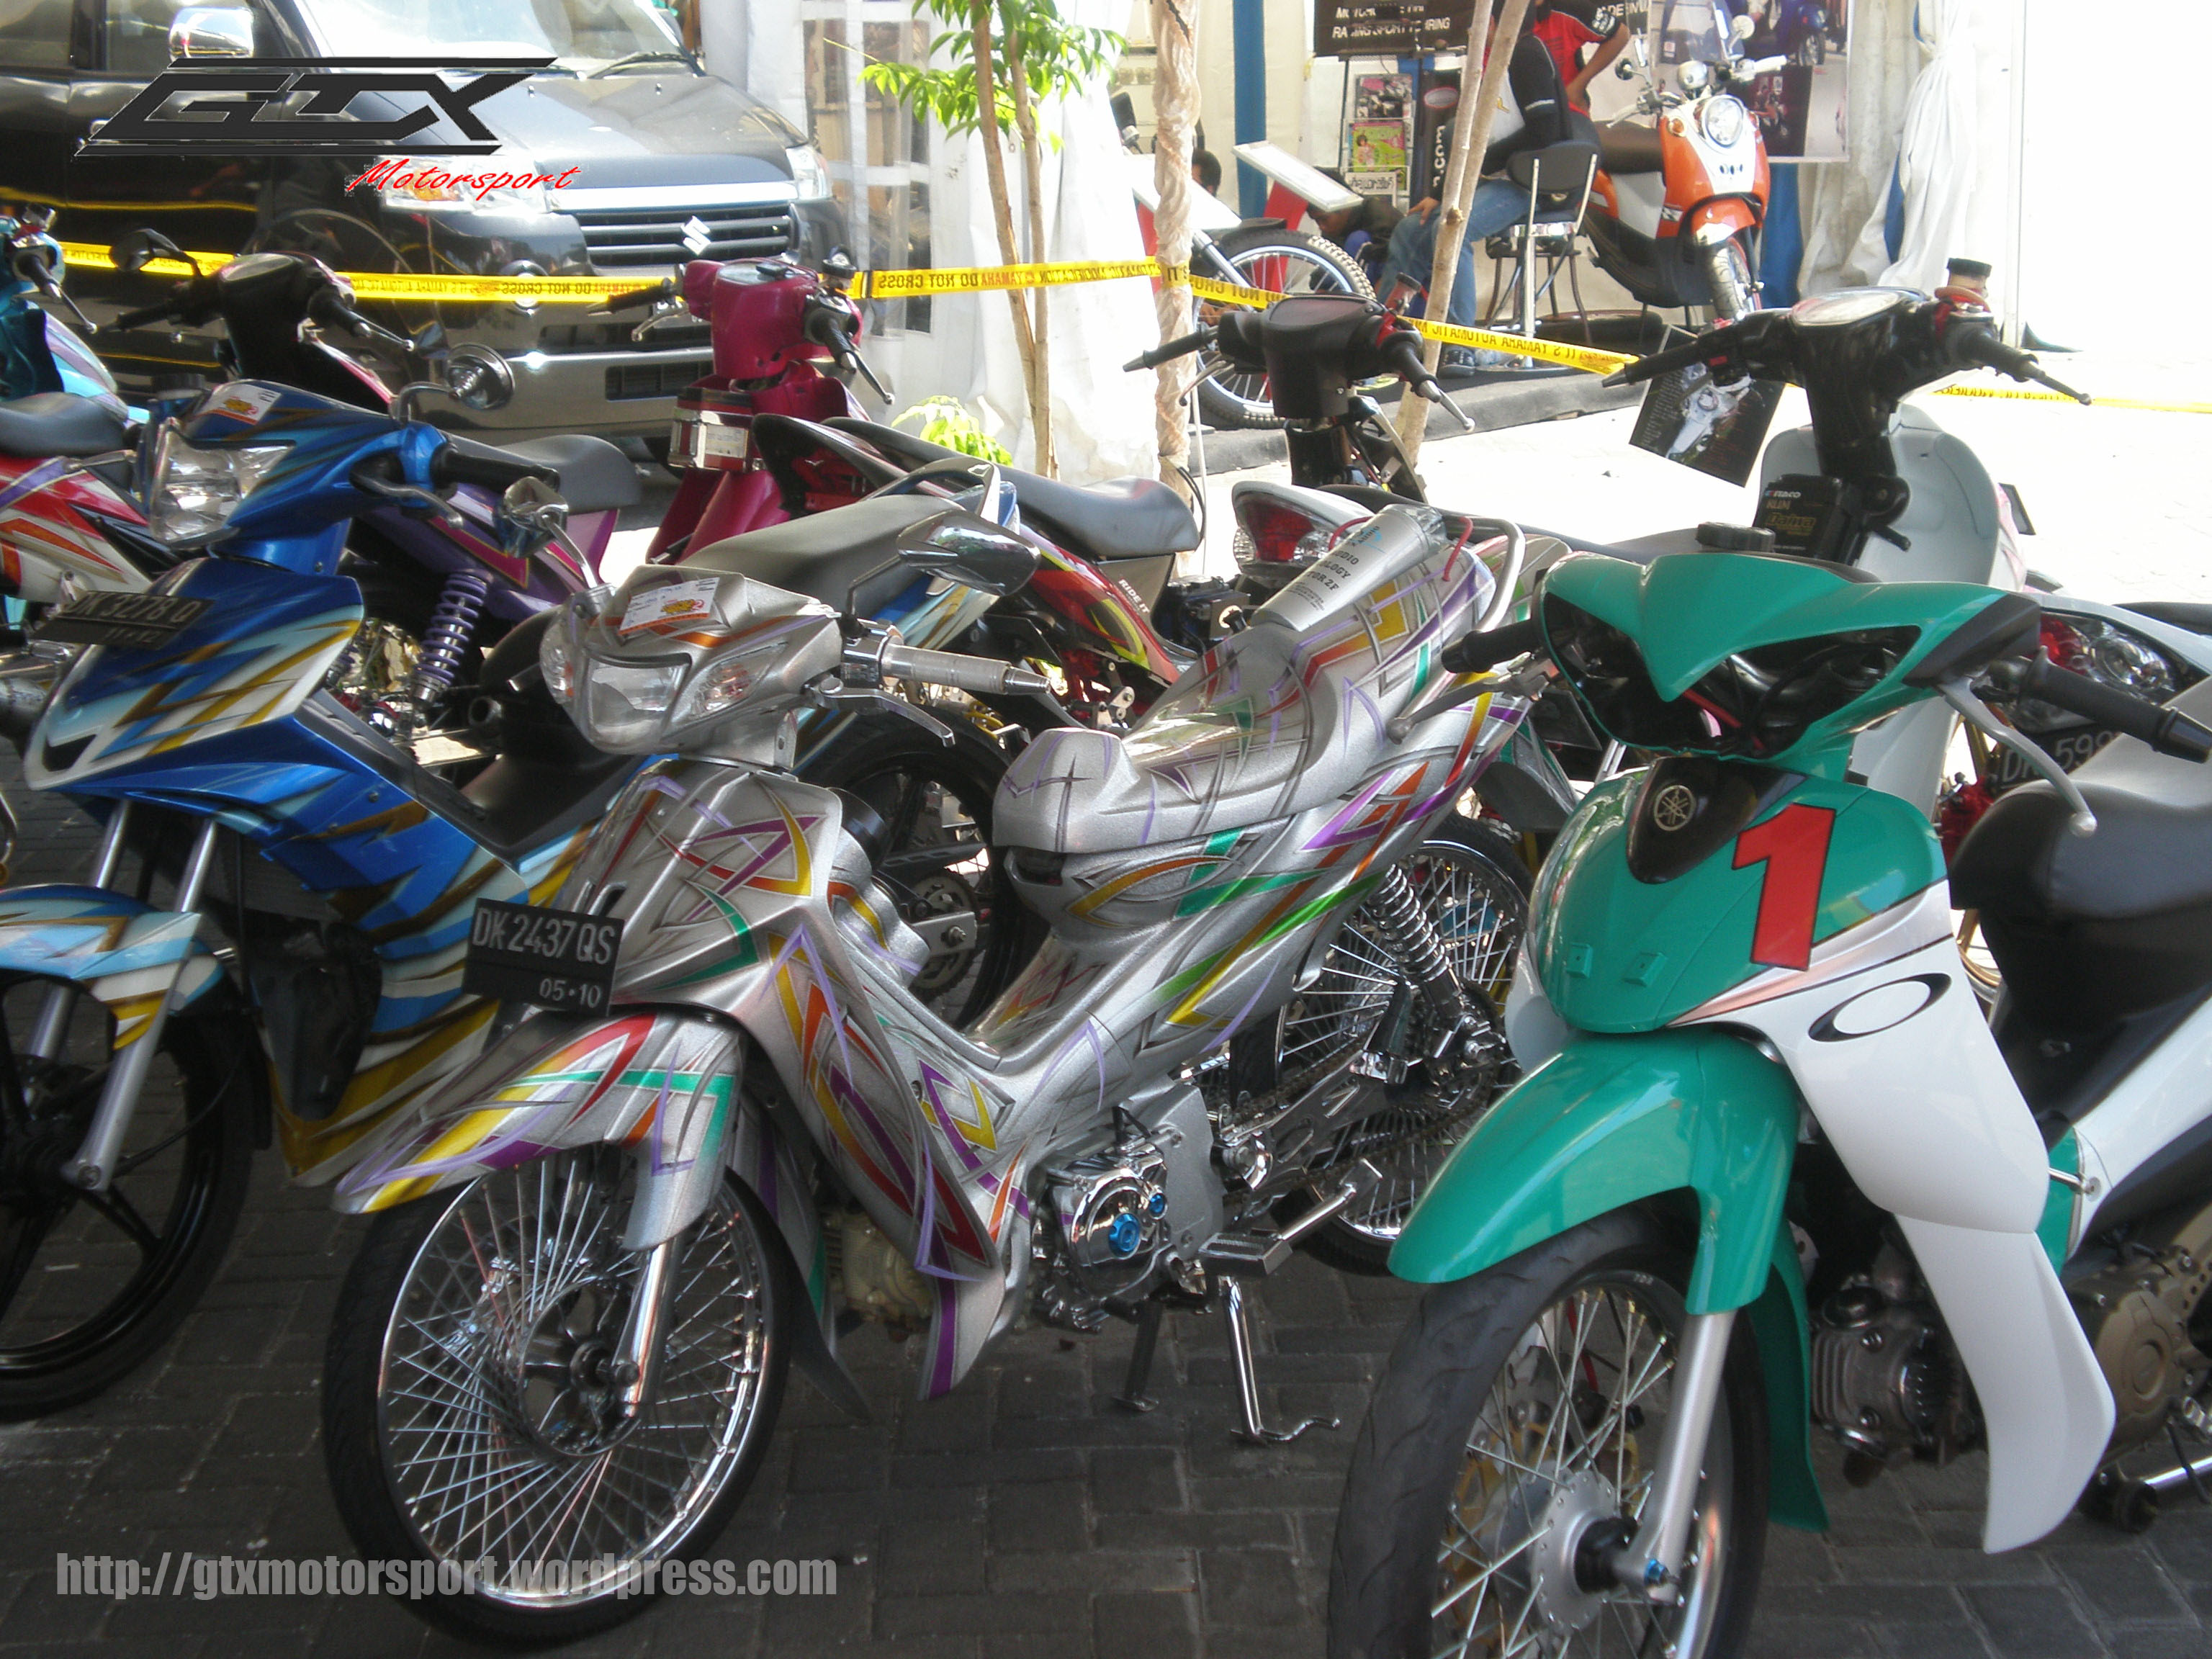 70 Gambar Motor Modifikasi Di Bali Terupdate Gedheg Motor